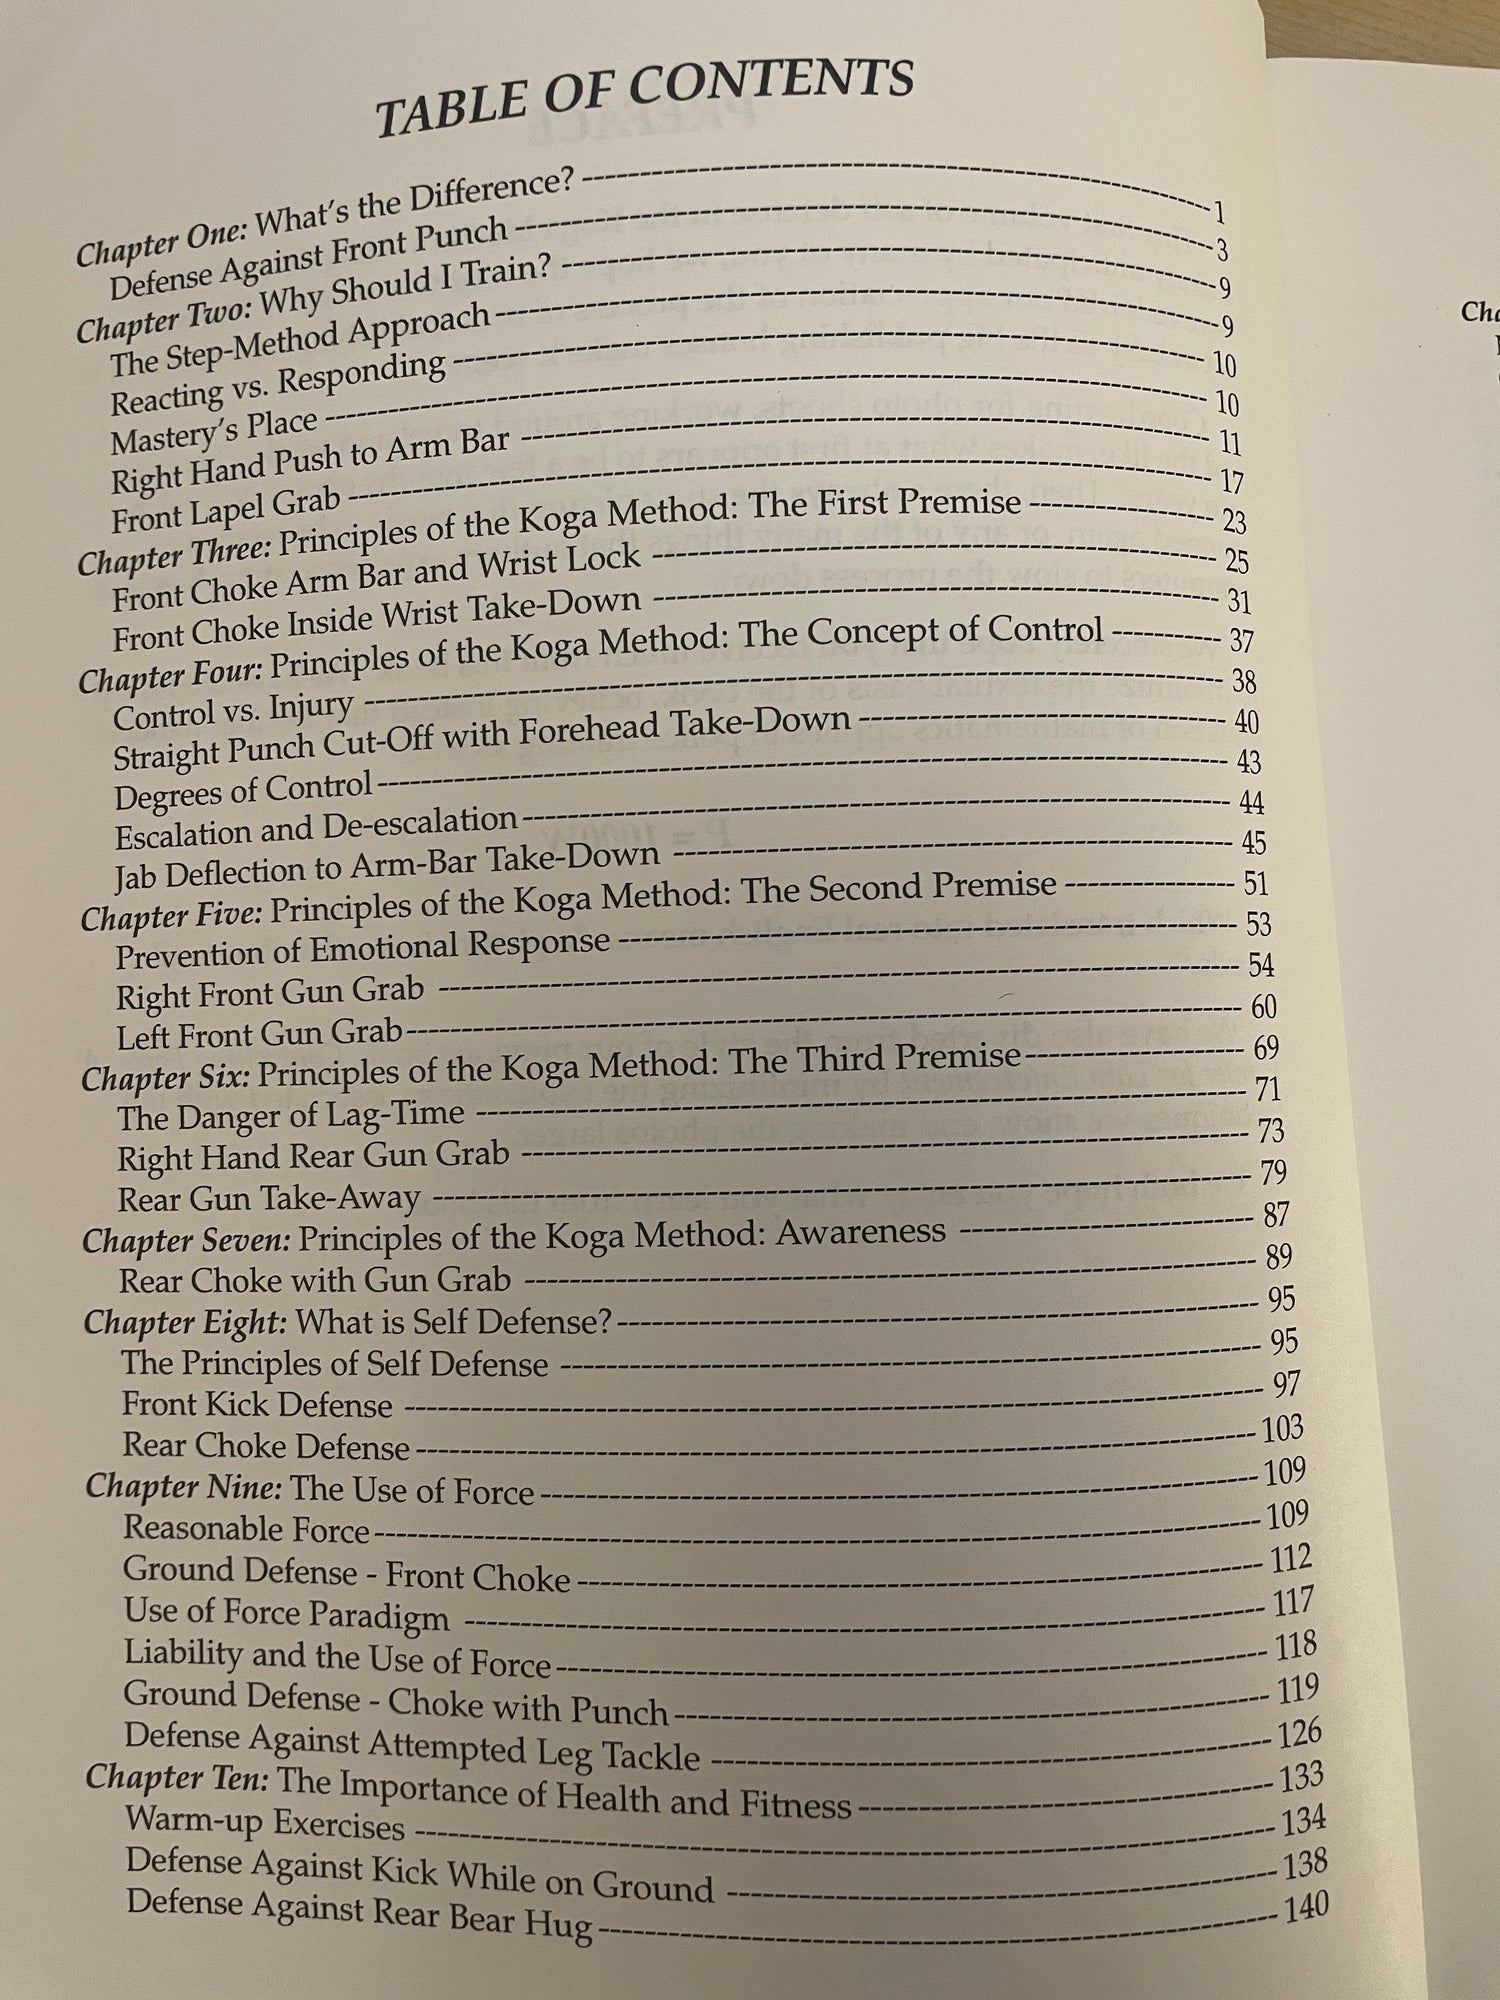 Redireccionamiento de la fuerza: un manual para el cumplimiento de la ley Libro de Robert Koga (usado)